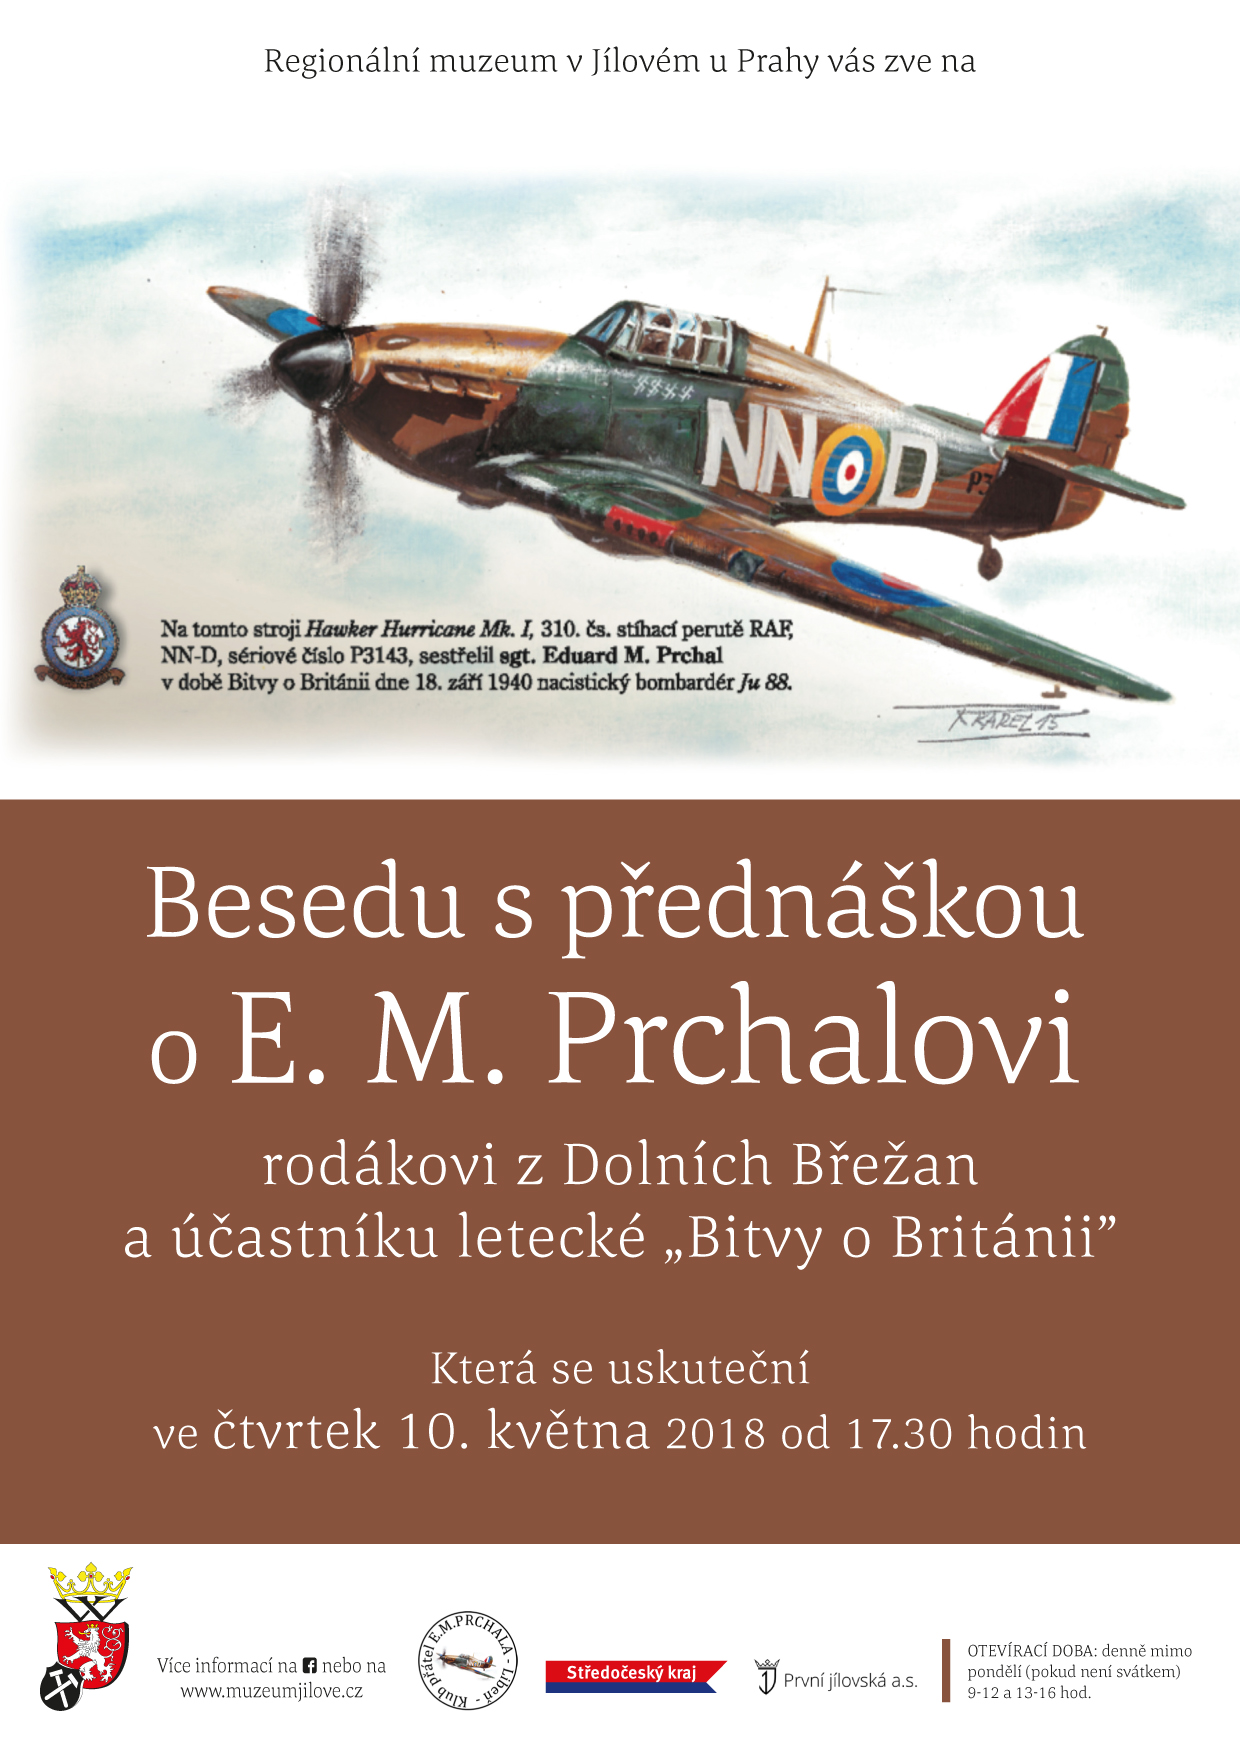 Přednáška o válečném pilotovi E. M. Prchalovi